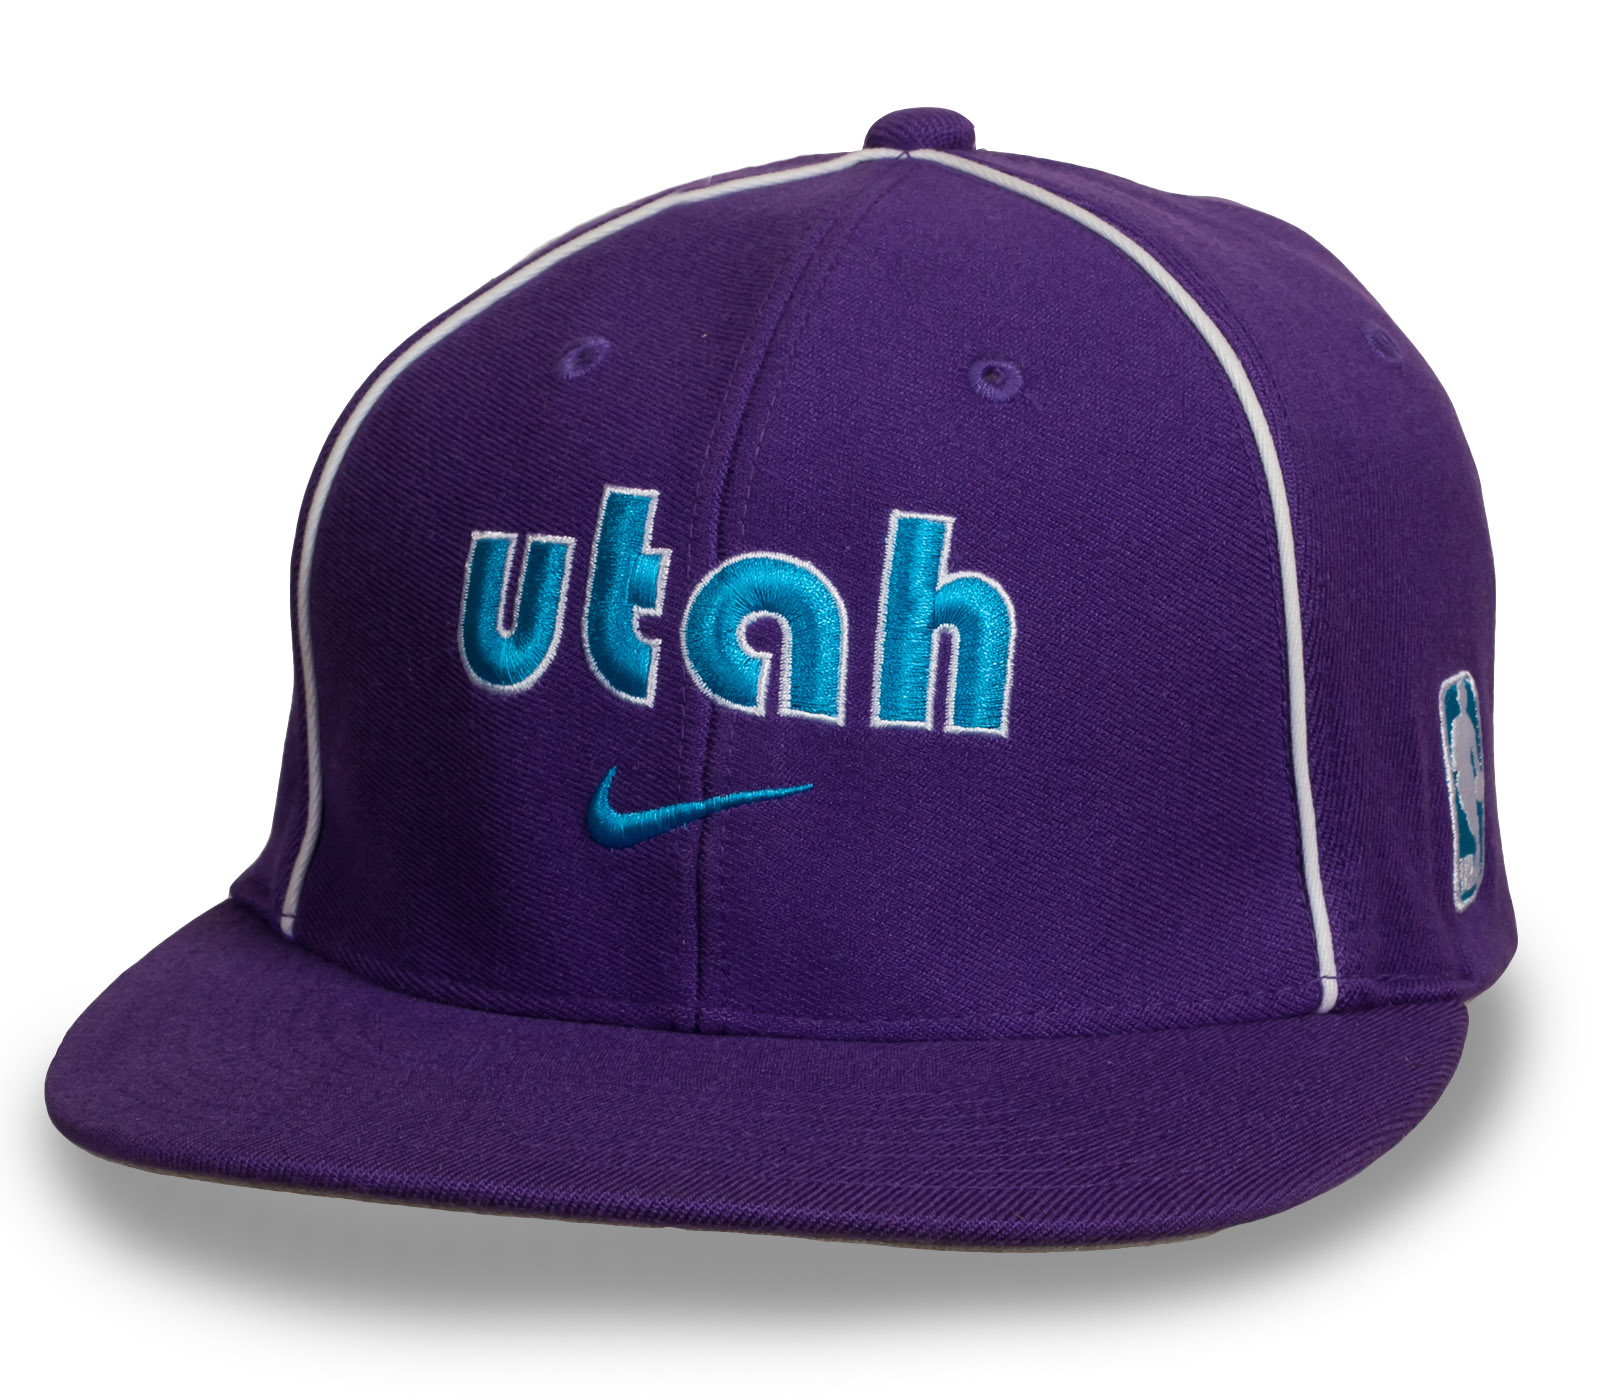 Купить спортивную кепку снепбек Utah по выгодной цене с доставкой